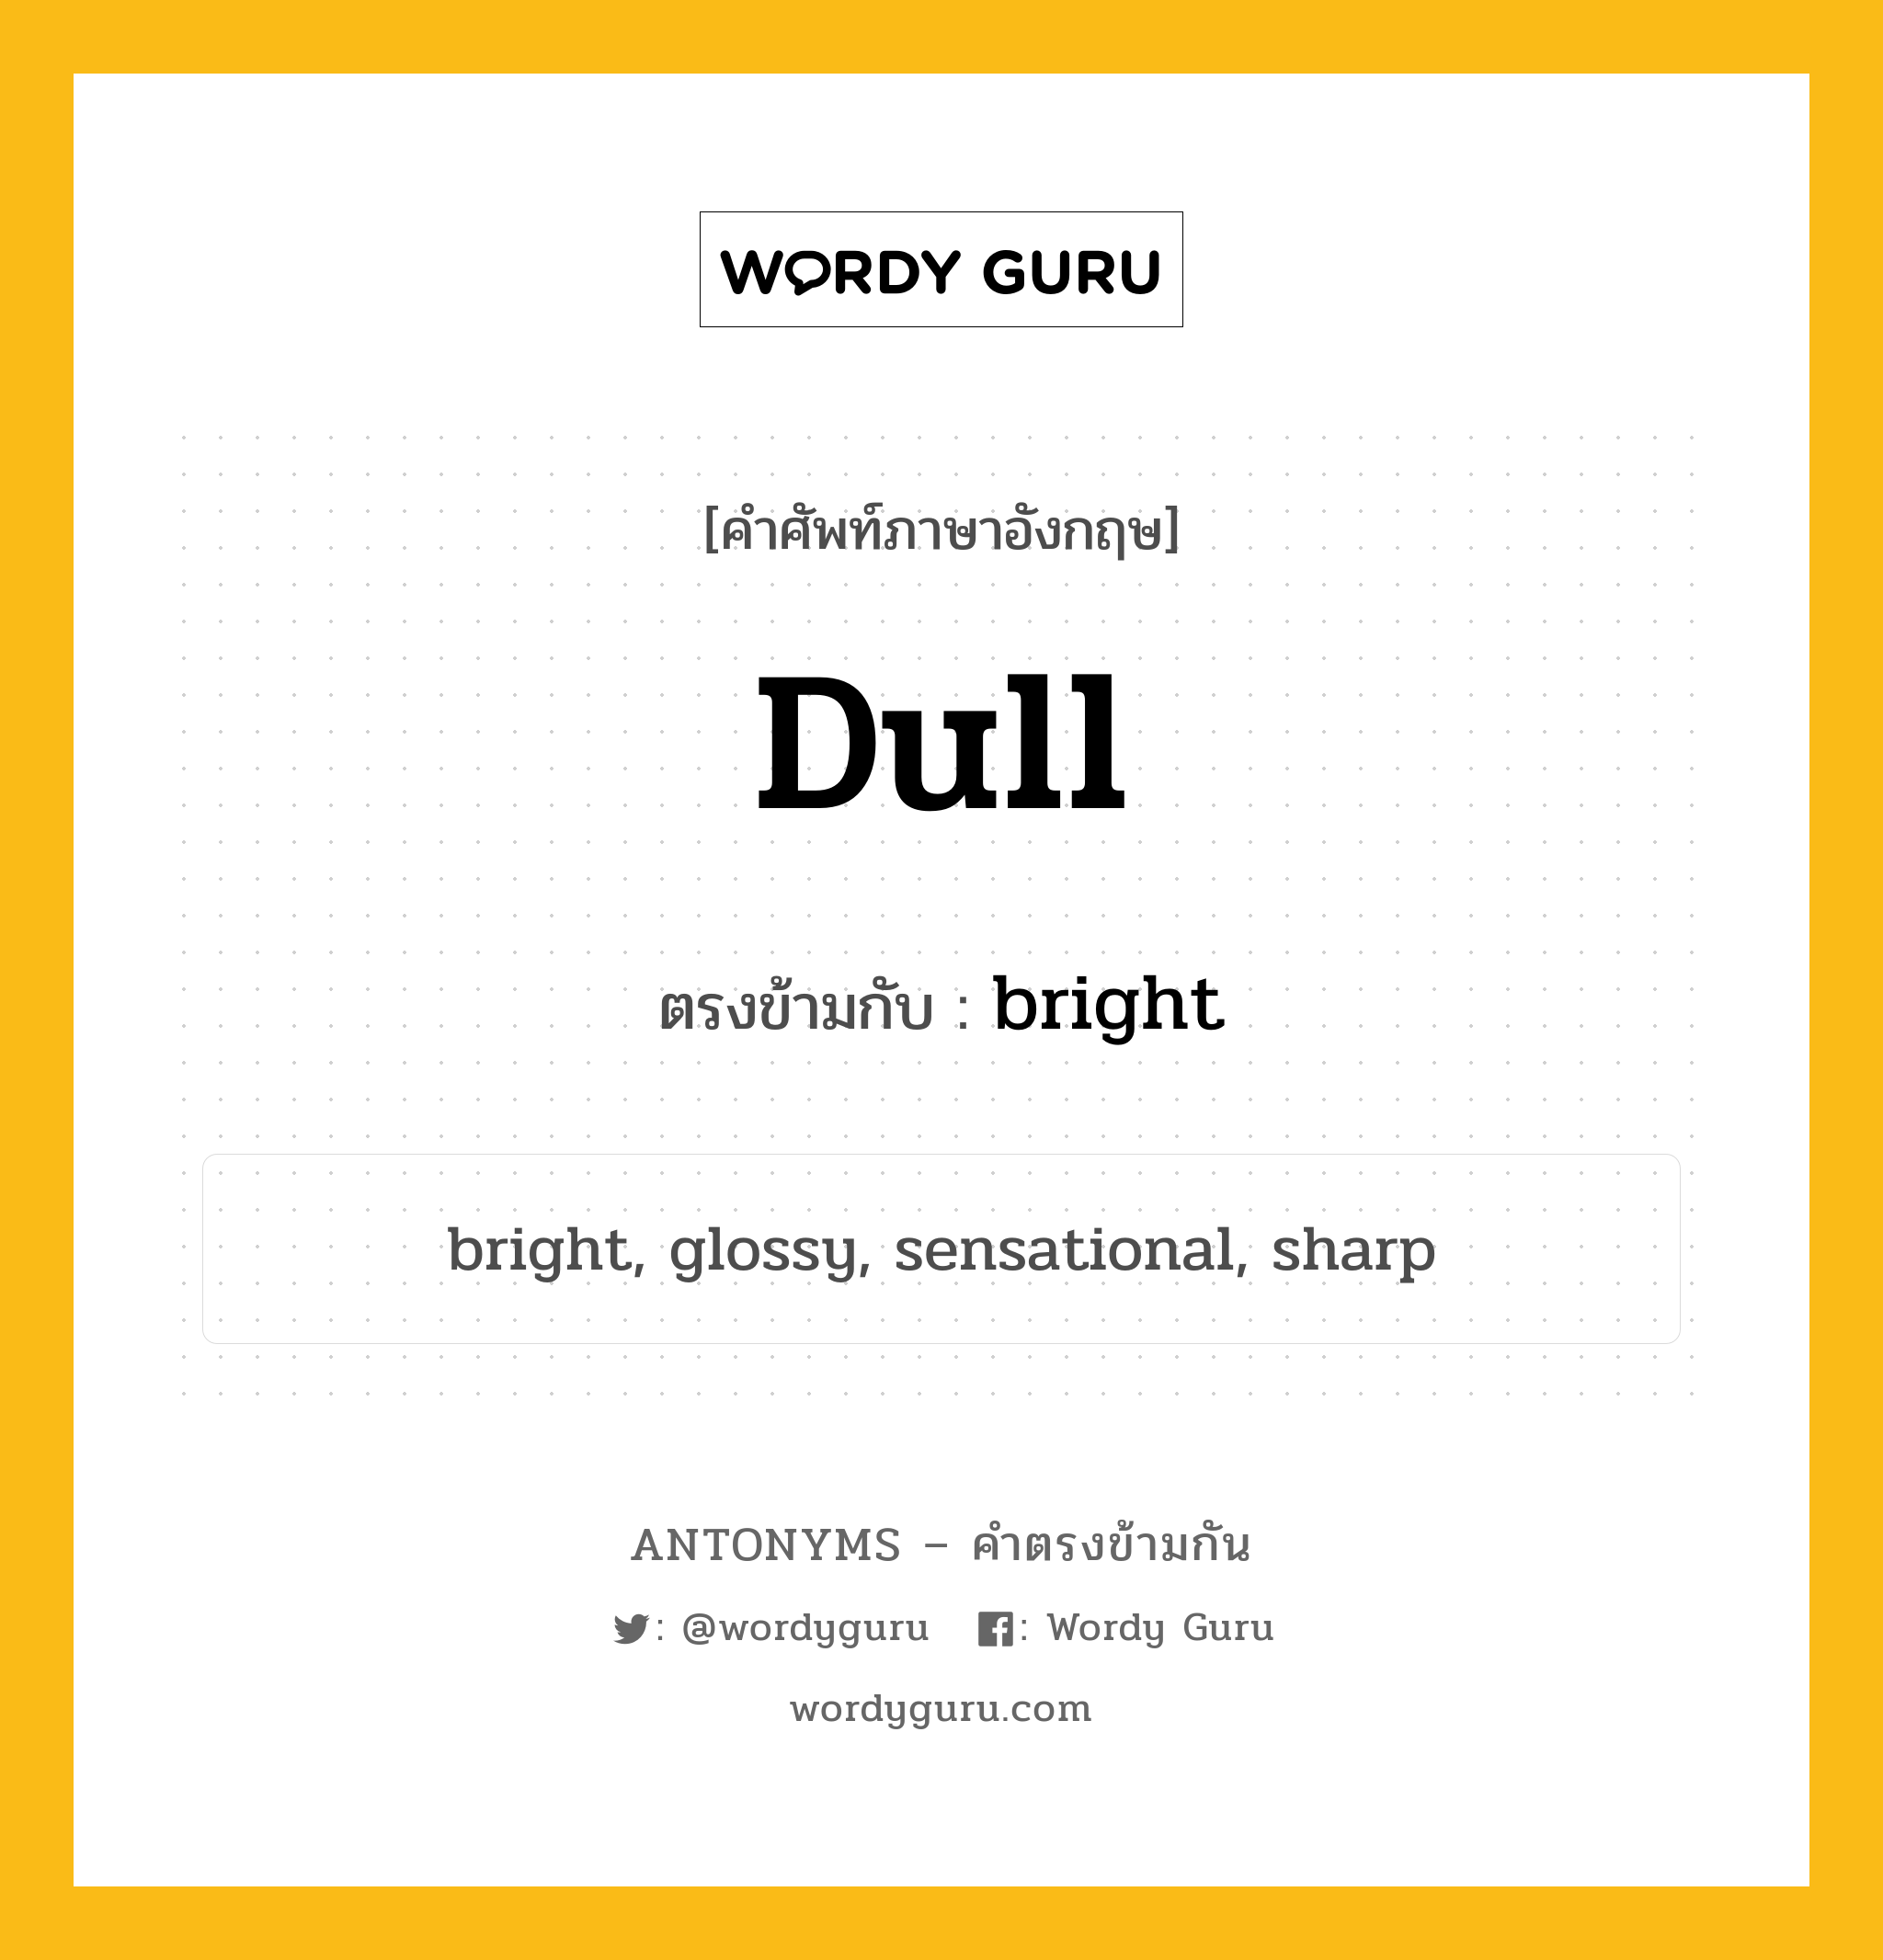 dull เป็นคำตรงข้ามกับคำไหนบ้าง?, คำศัพท์ภาษาอังกฤษที่มีความหมายตรงข้ามกัน dull ตรงข้ามกับ bright หมวด bright